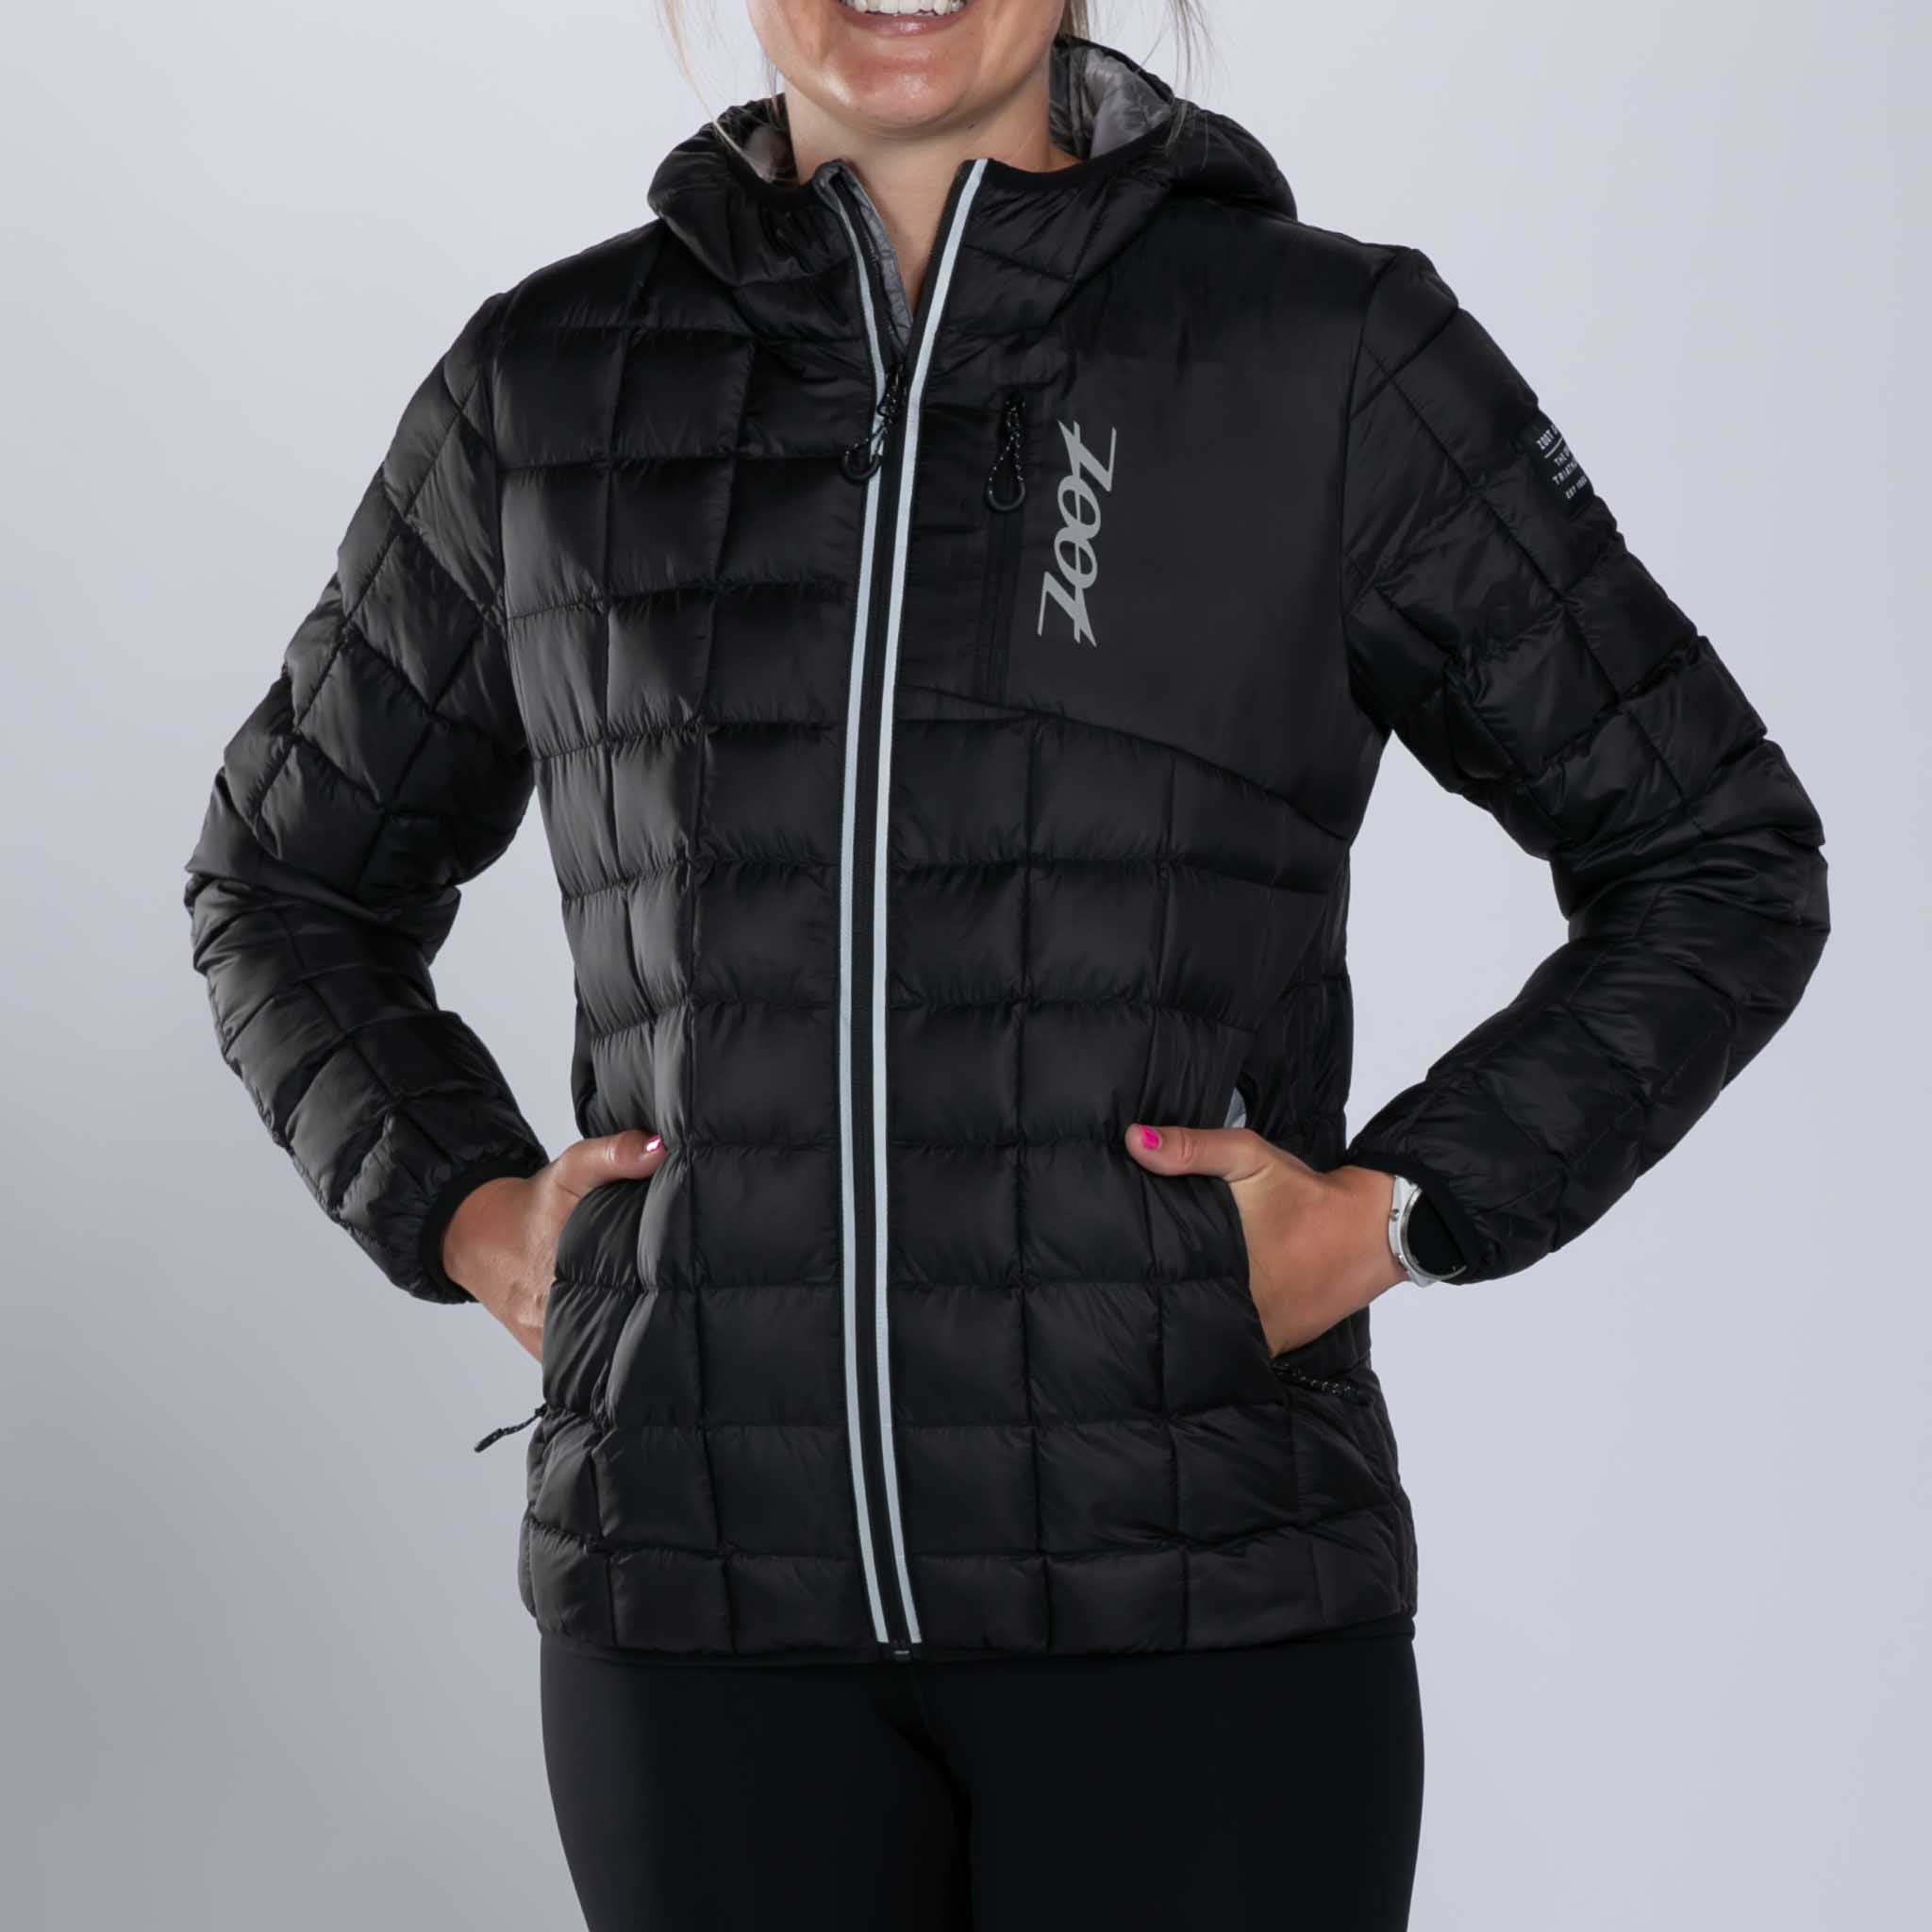 Zoot Sports RUN OUTERWEAR Women's Elite Puffer Jacket - Black